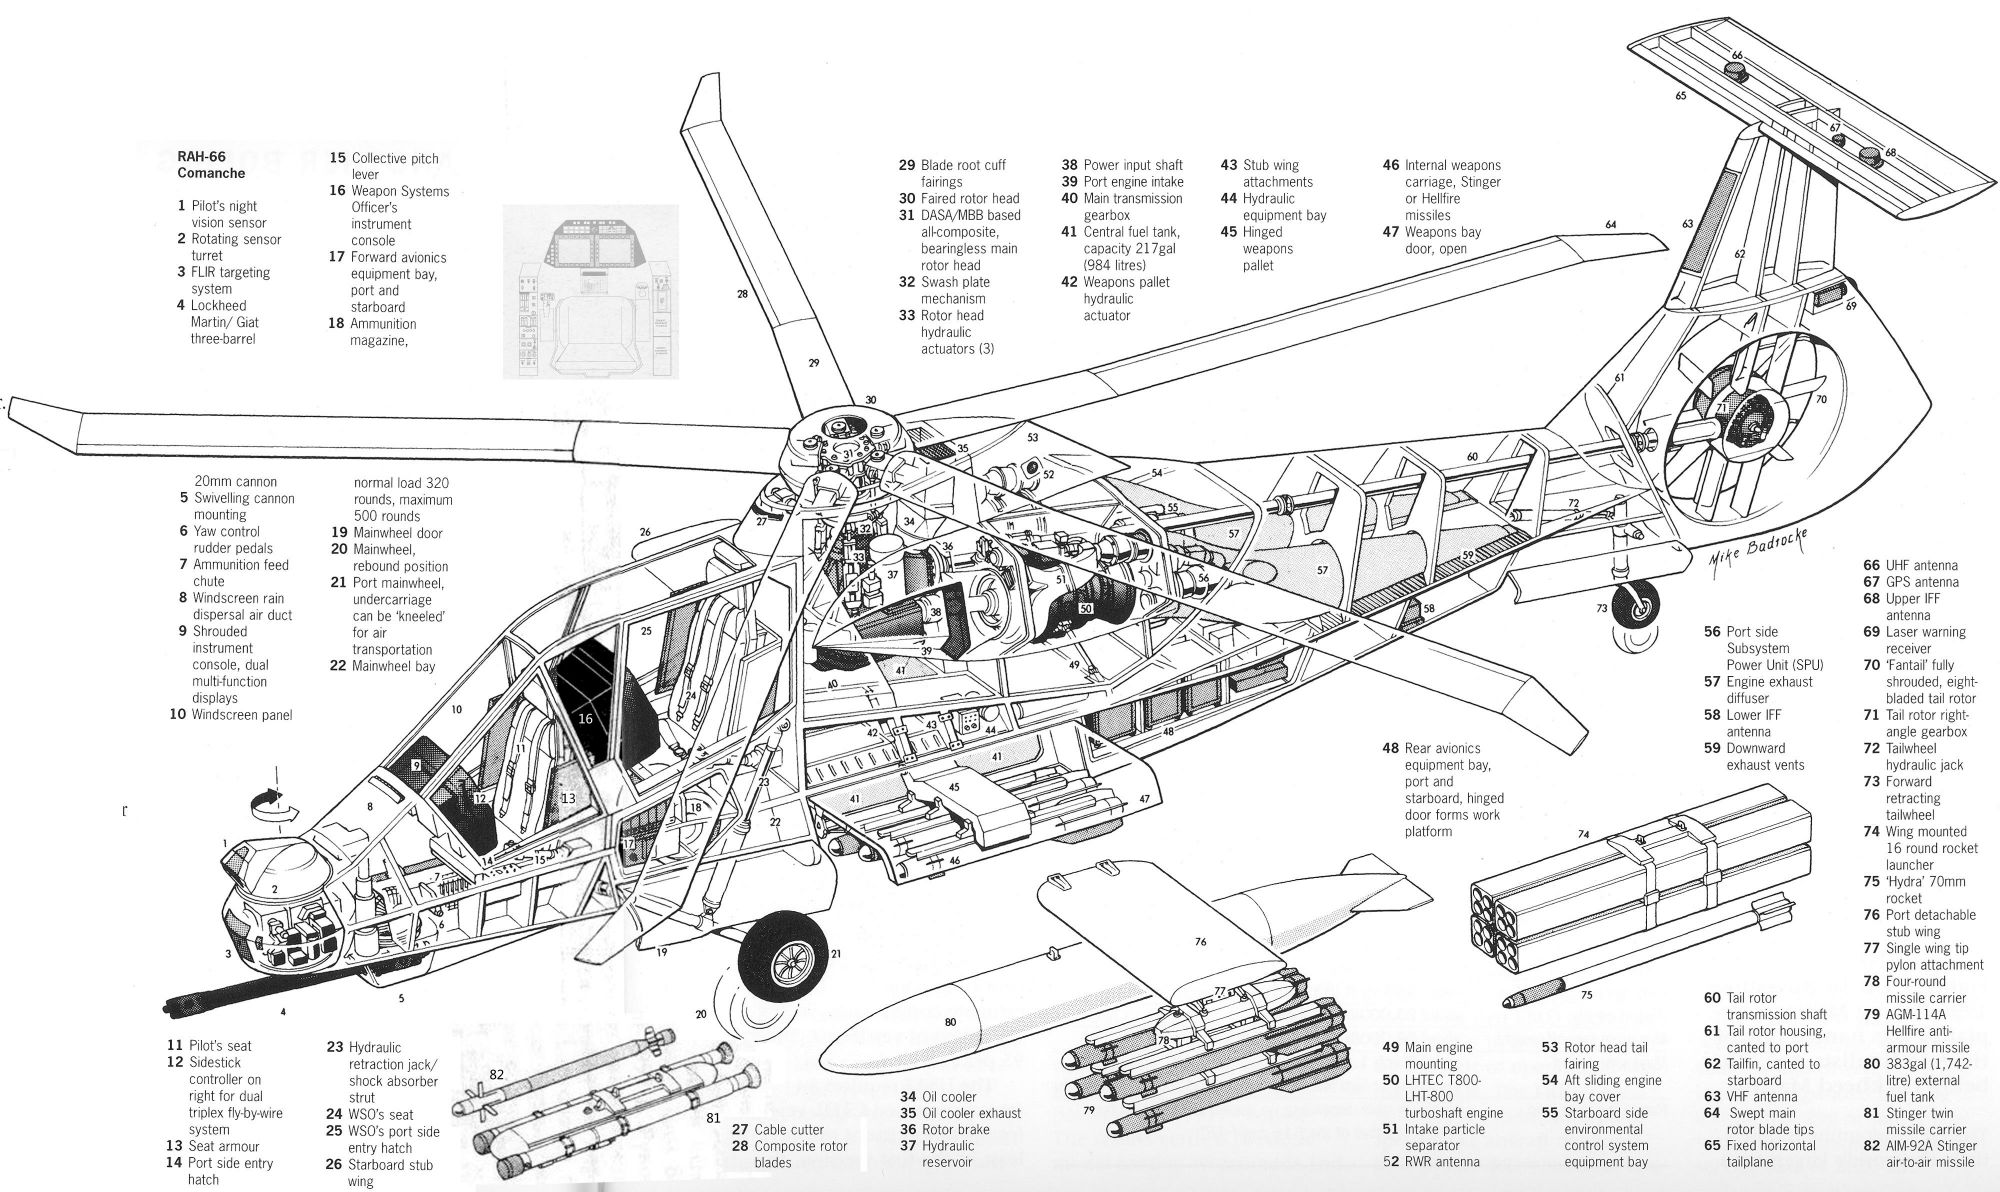 资料图：图为采用共形天线的RAH-66“科曼奇”（Comanche）武装直升机剖面图，其垂尾就集成有通信系统天线，共形天线优点就是天线与直升机一体化，没有突出机身表面，既降低了直升机的RCS，也降低了阻力，但研制难度较大。（拖拽图片可查看原尺寸大图）